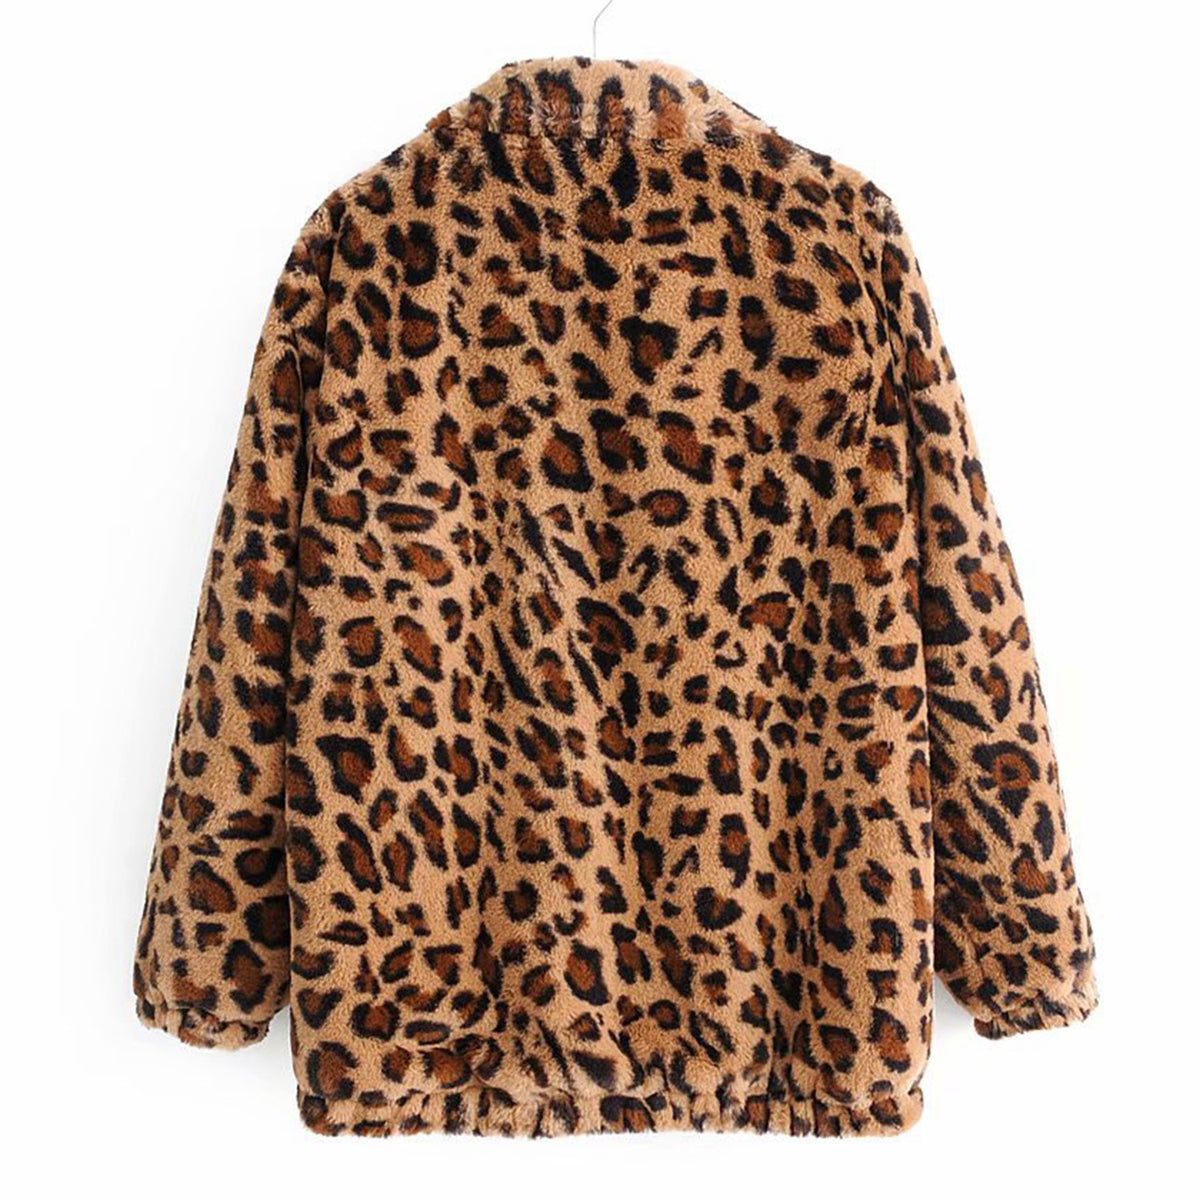 Leopard Teddy Sweater Faux Fur Jacket - worthtryit.com